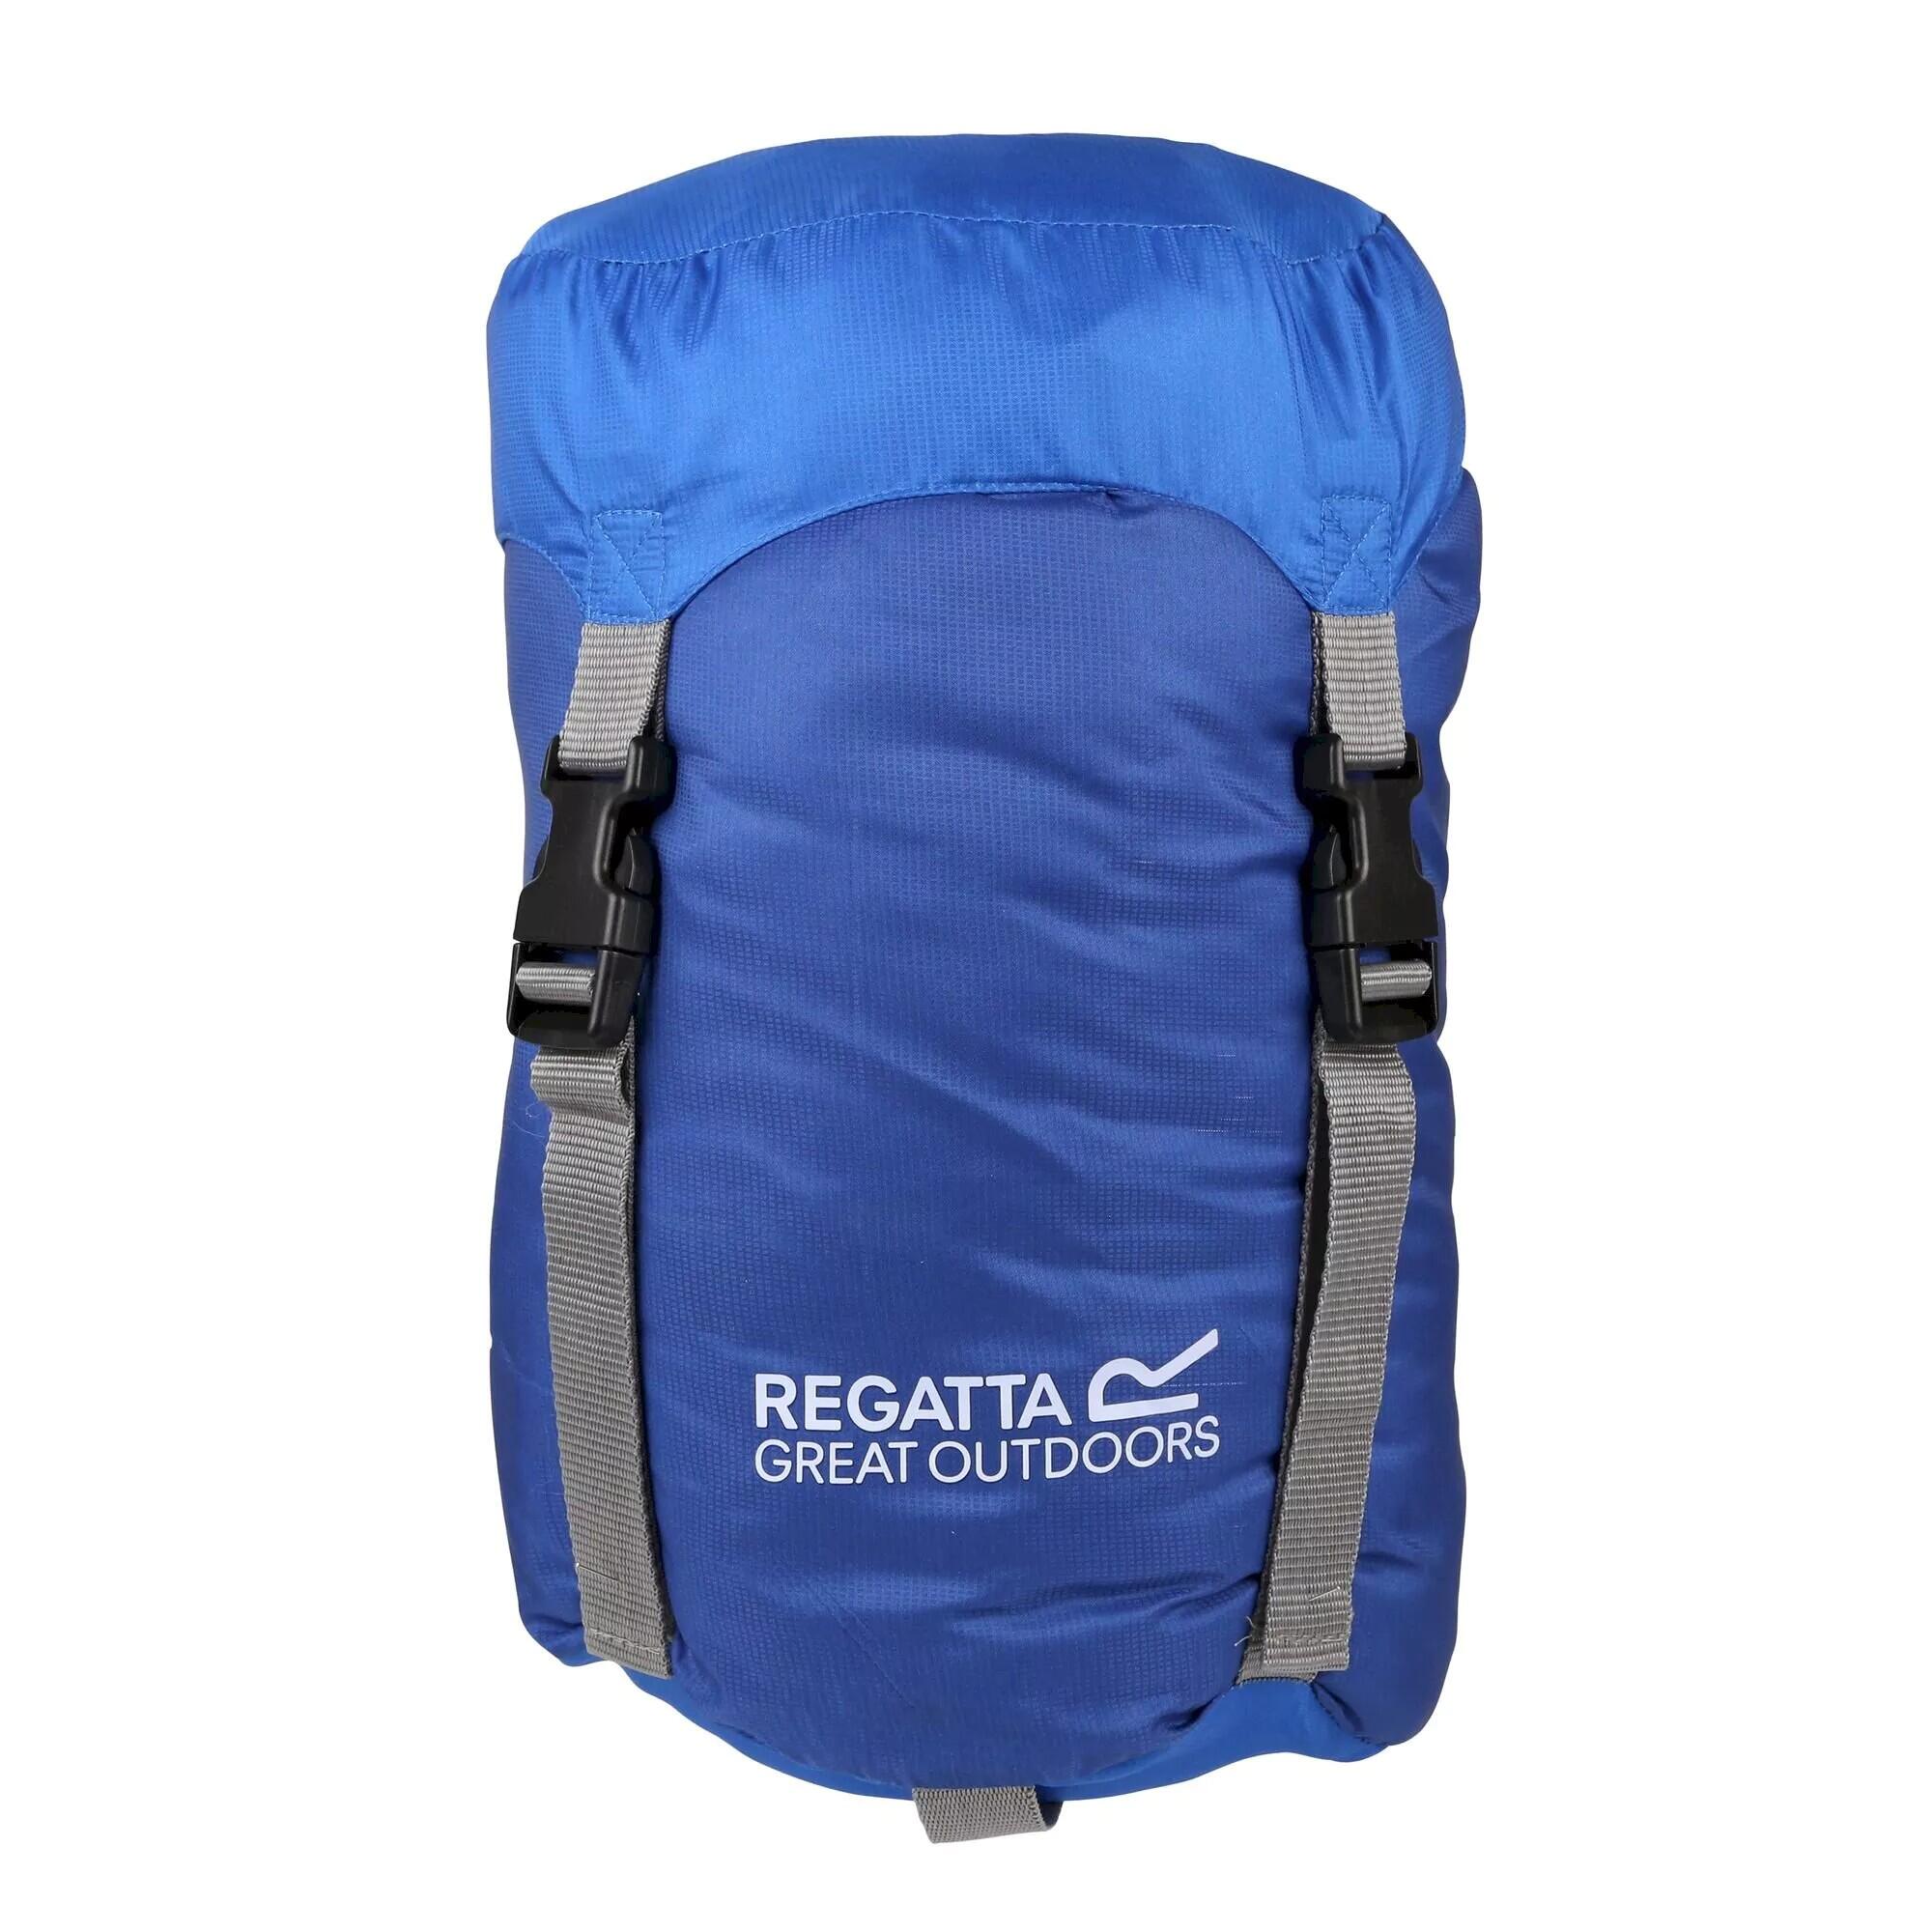 REGATTA Hilo v2 200 Mummy Sleeping Bag (Oxford Blue/Laser Blue)